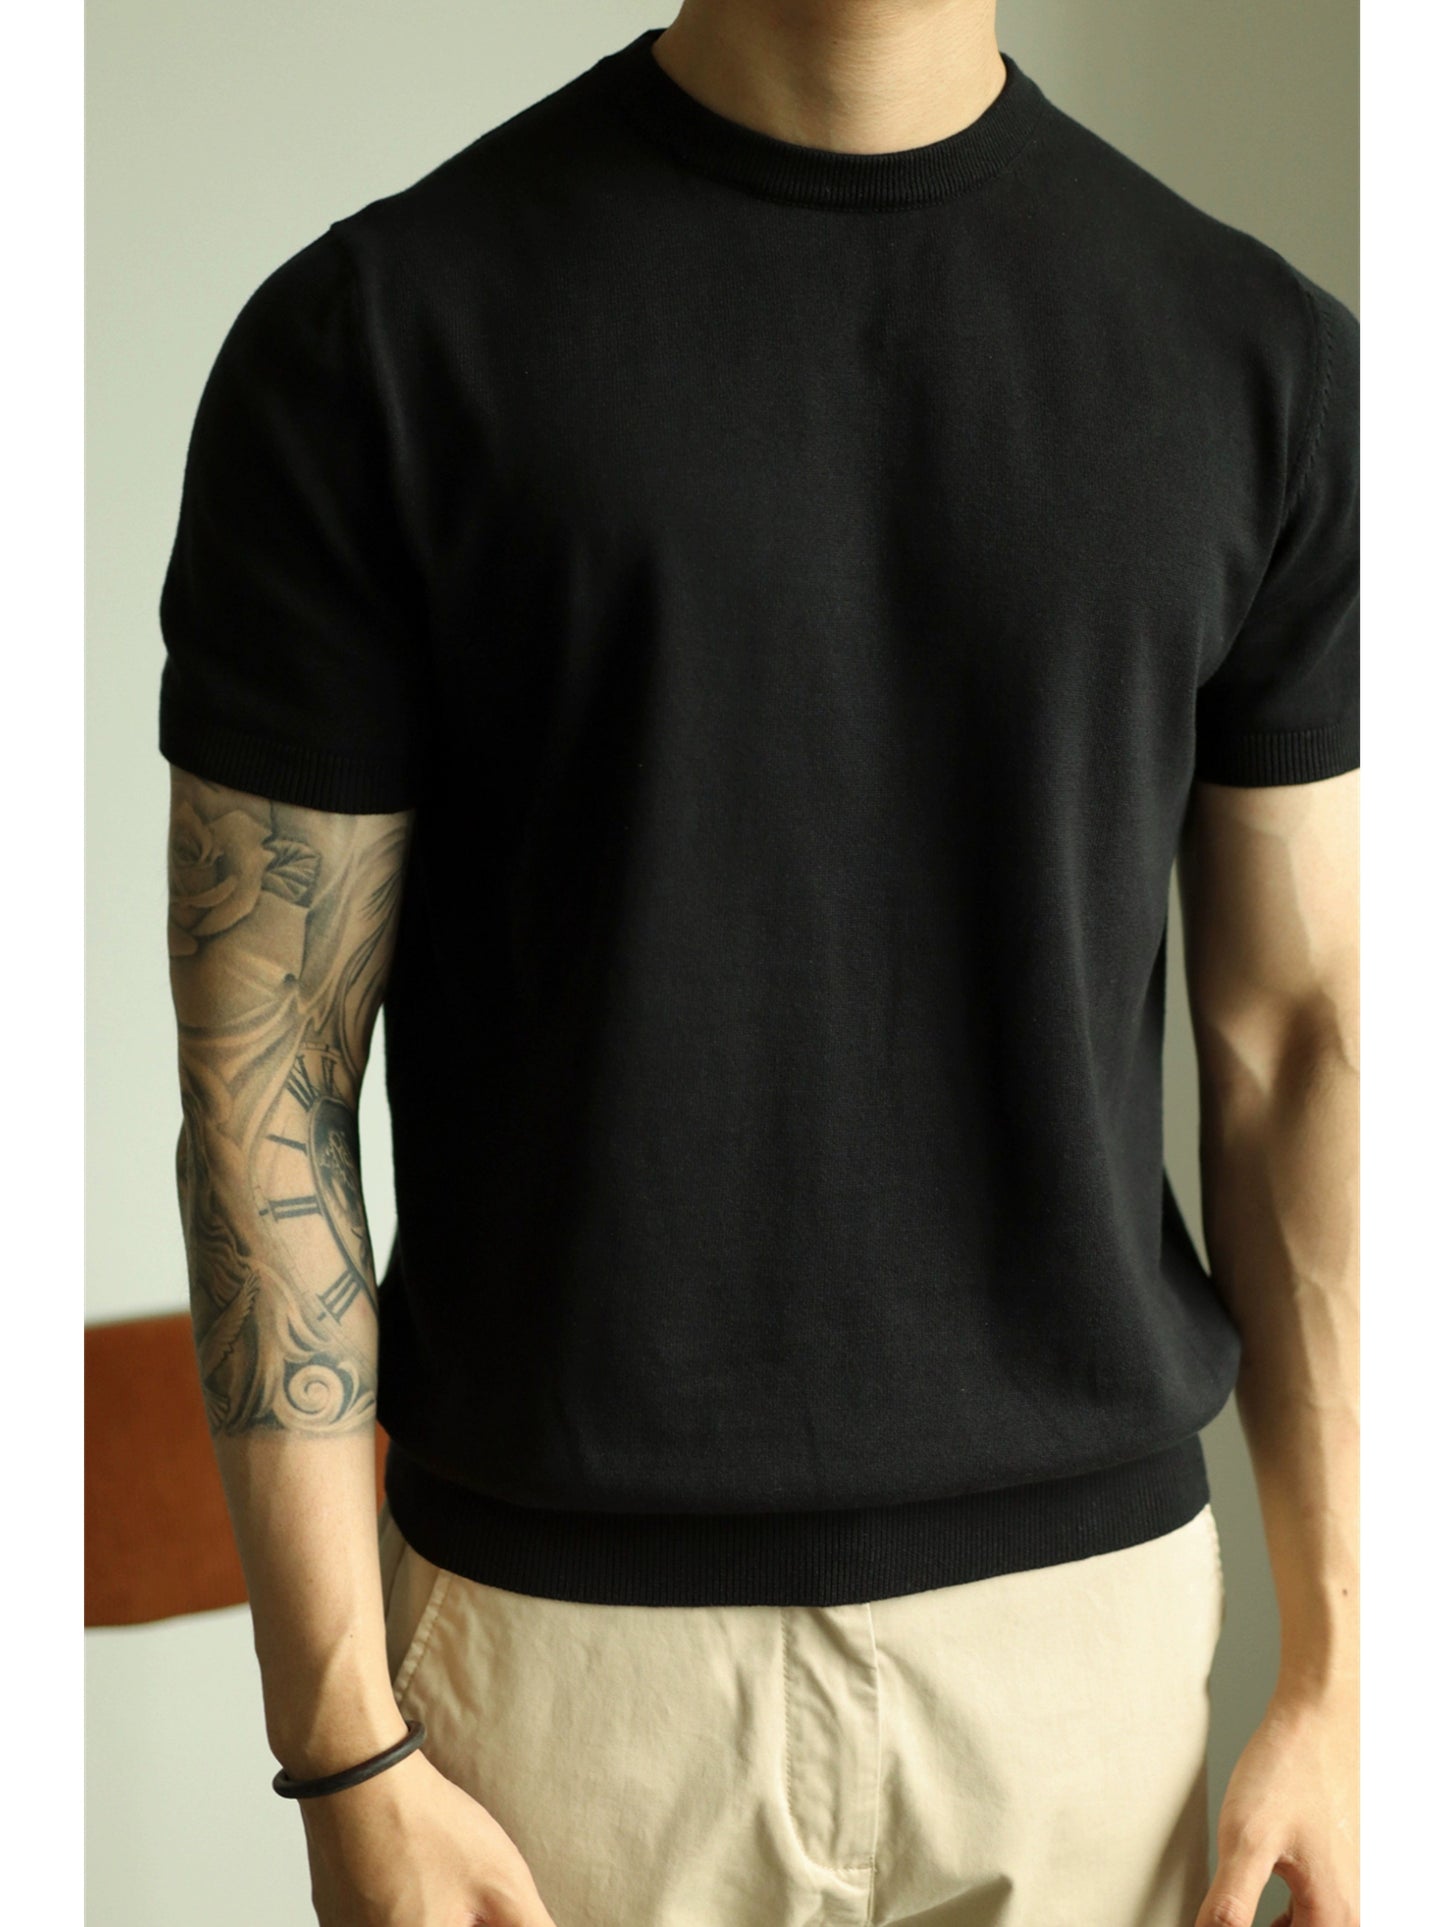 Yuxian Pure Cotton Yarn Men's Business Short Sleeve T-shirt